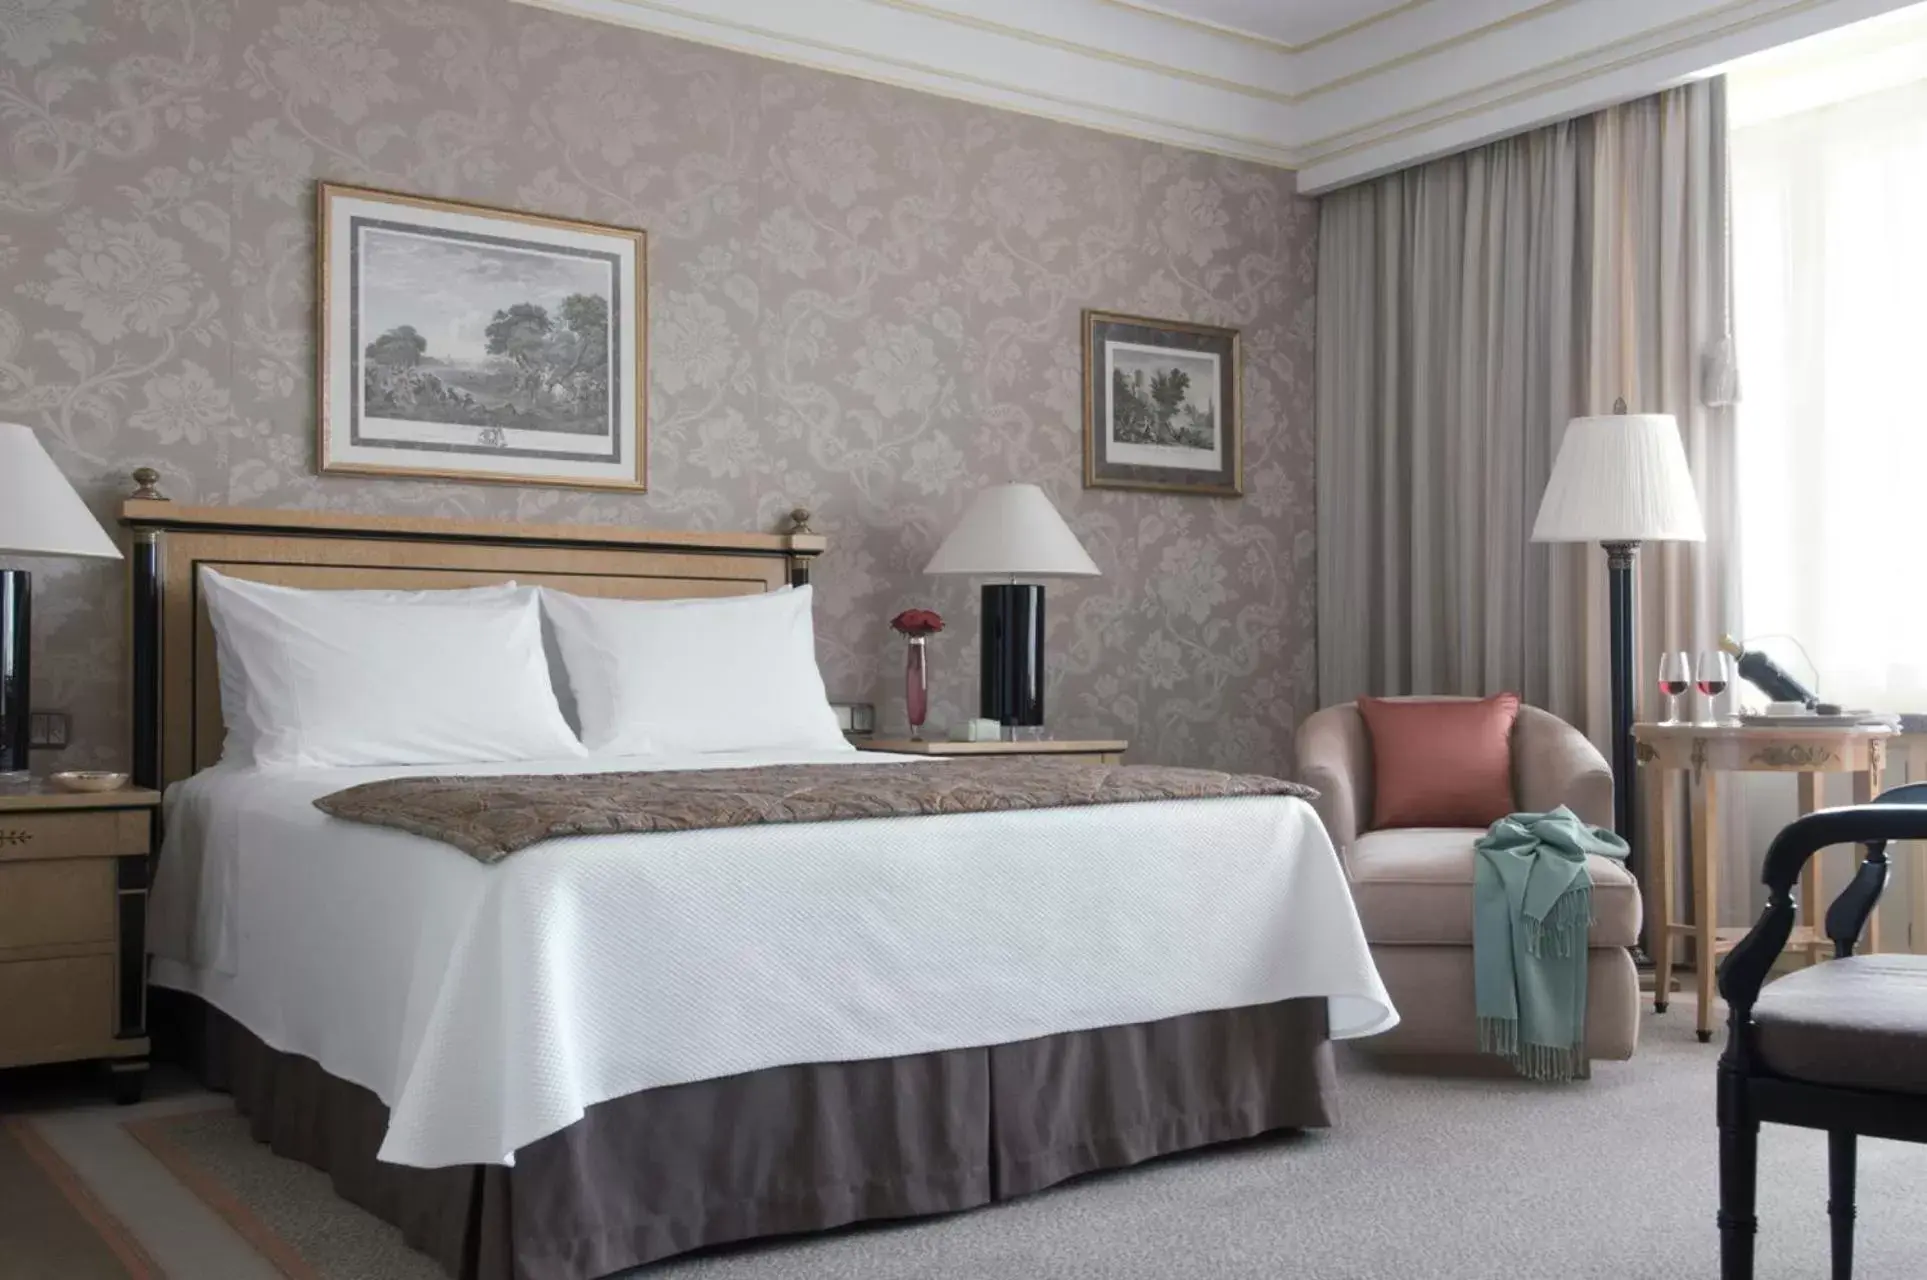 Bed in Four Seasons Hotel Ritz Lisbon